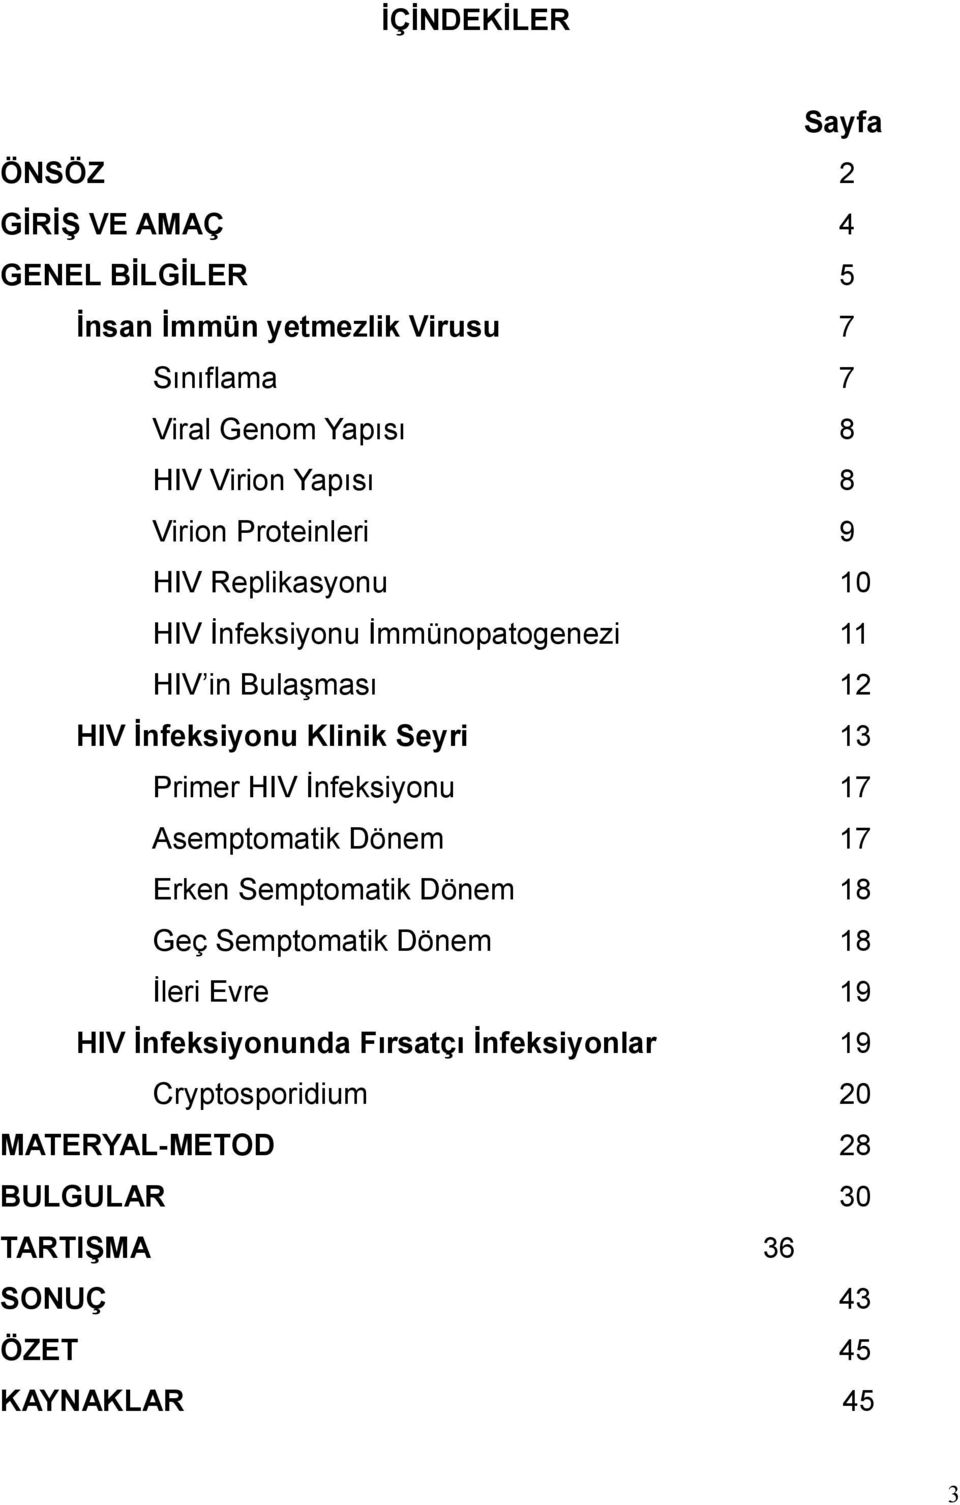 Klinik Seyri 13 Primer HIV İnfeksiyonu 17 Asemptomatik Dönem 17 Erken Semptomatik Dönem 18 Geç Semptomatik Dönem 18 İleri Evre 19